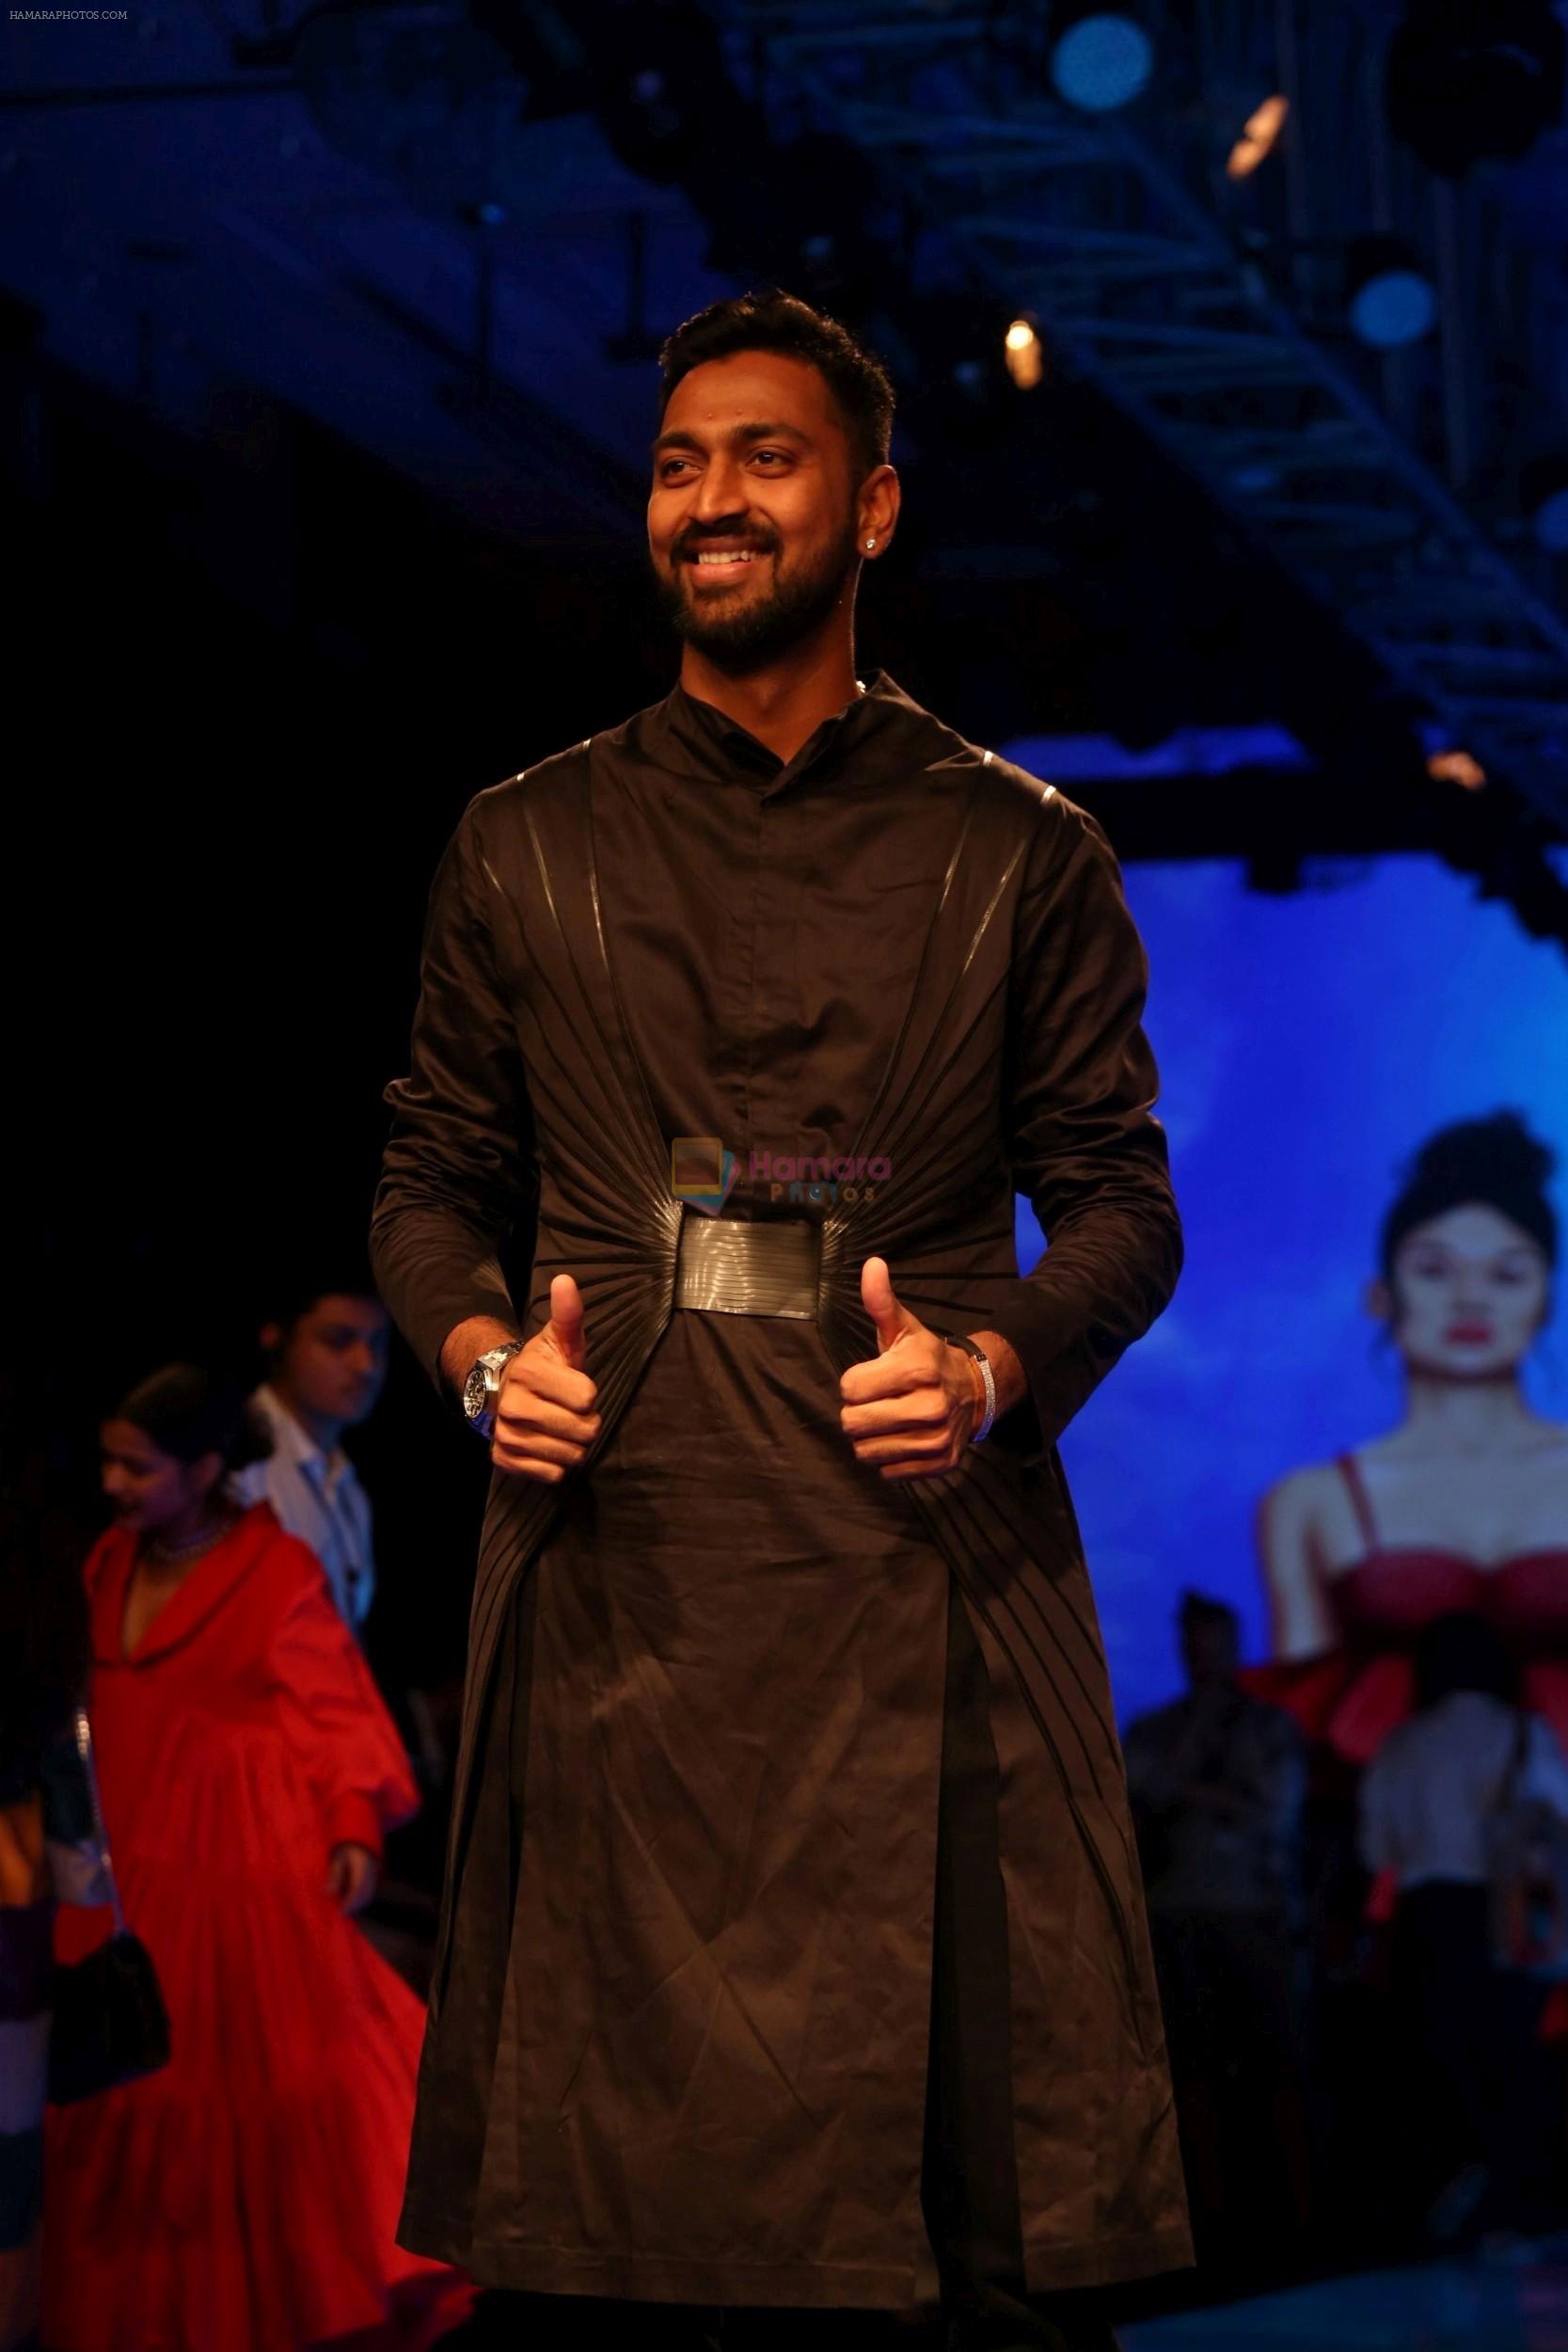 Krunal Pandya at Lakme Fashion Week 2019 on 21st Aug 2019